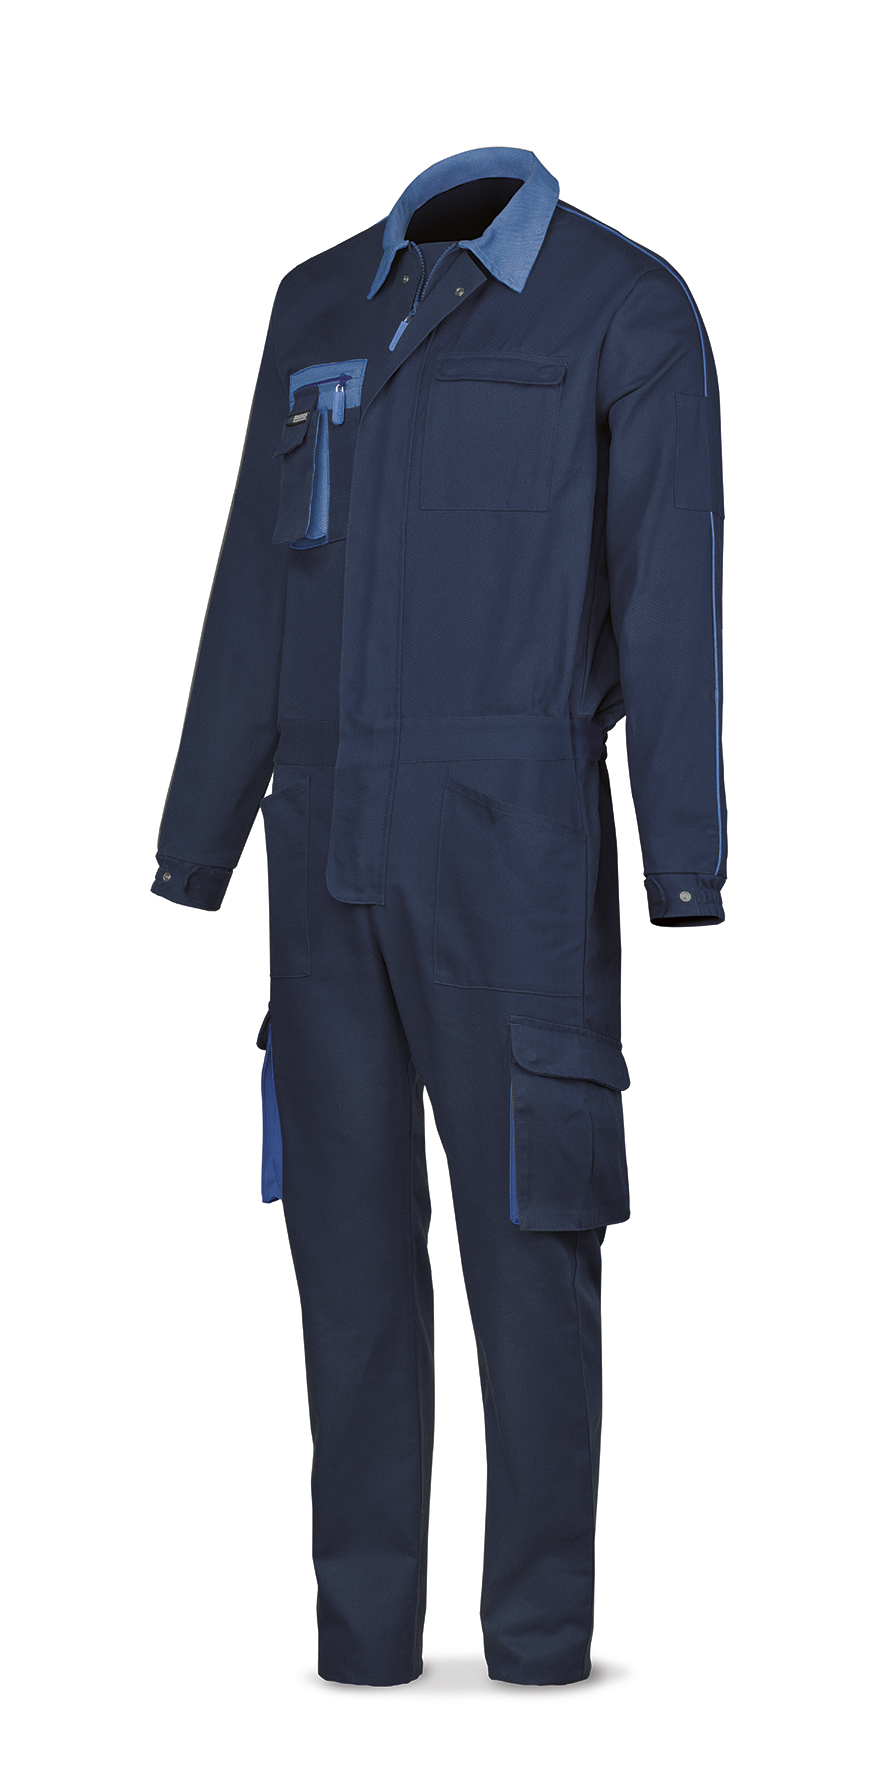 488-BSUPTOPAM Vetements de travail laboral Série SuperTop Combinaison bleu marine en coton 270 g. Multi-poches